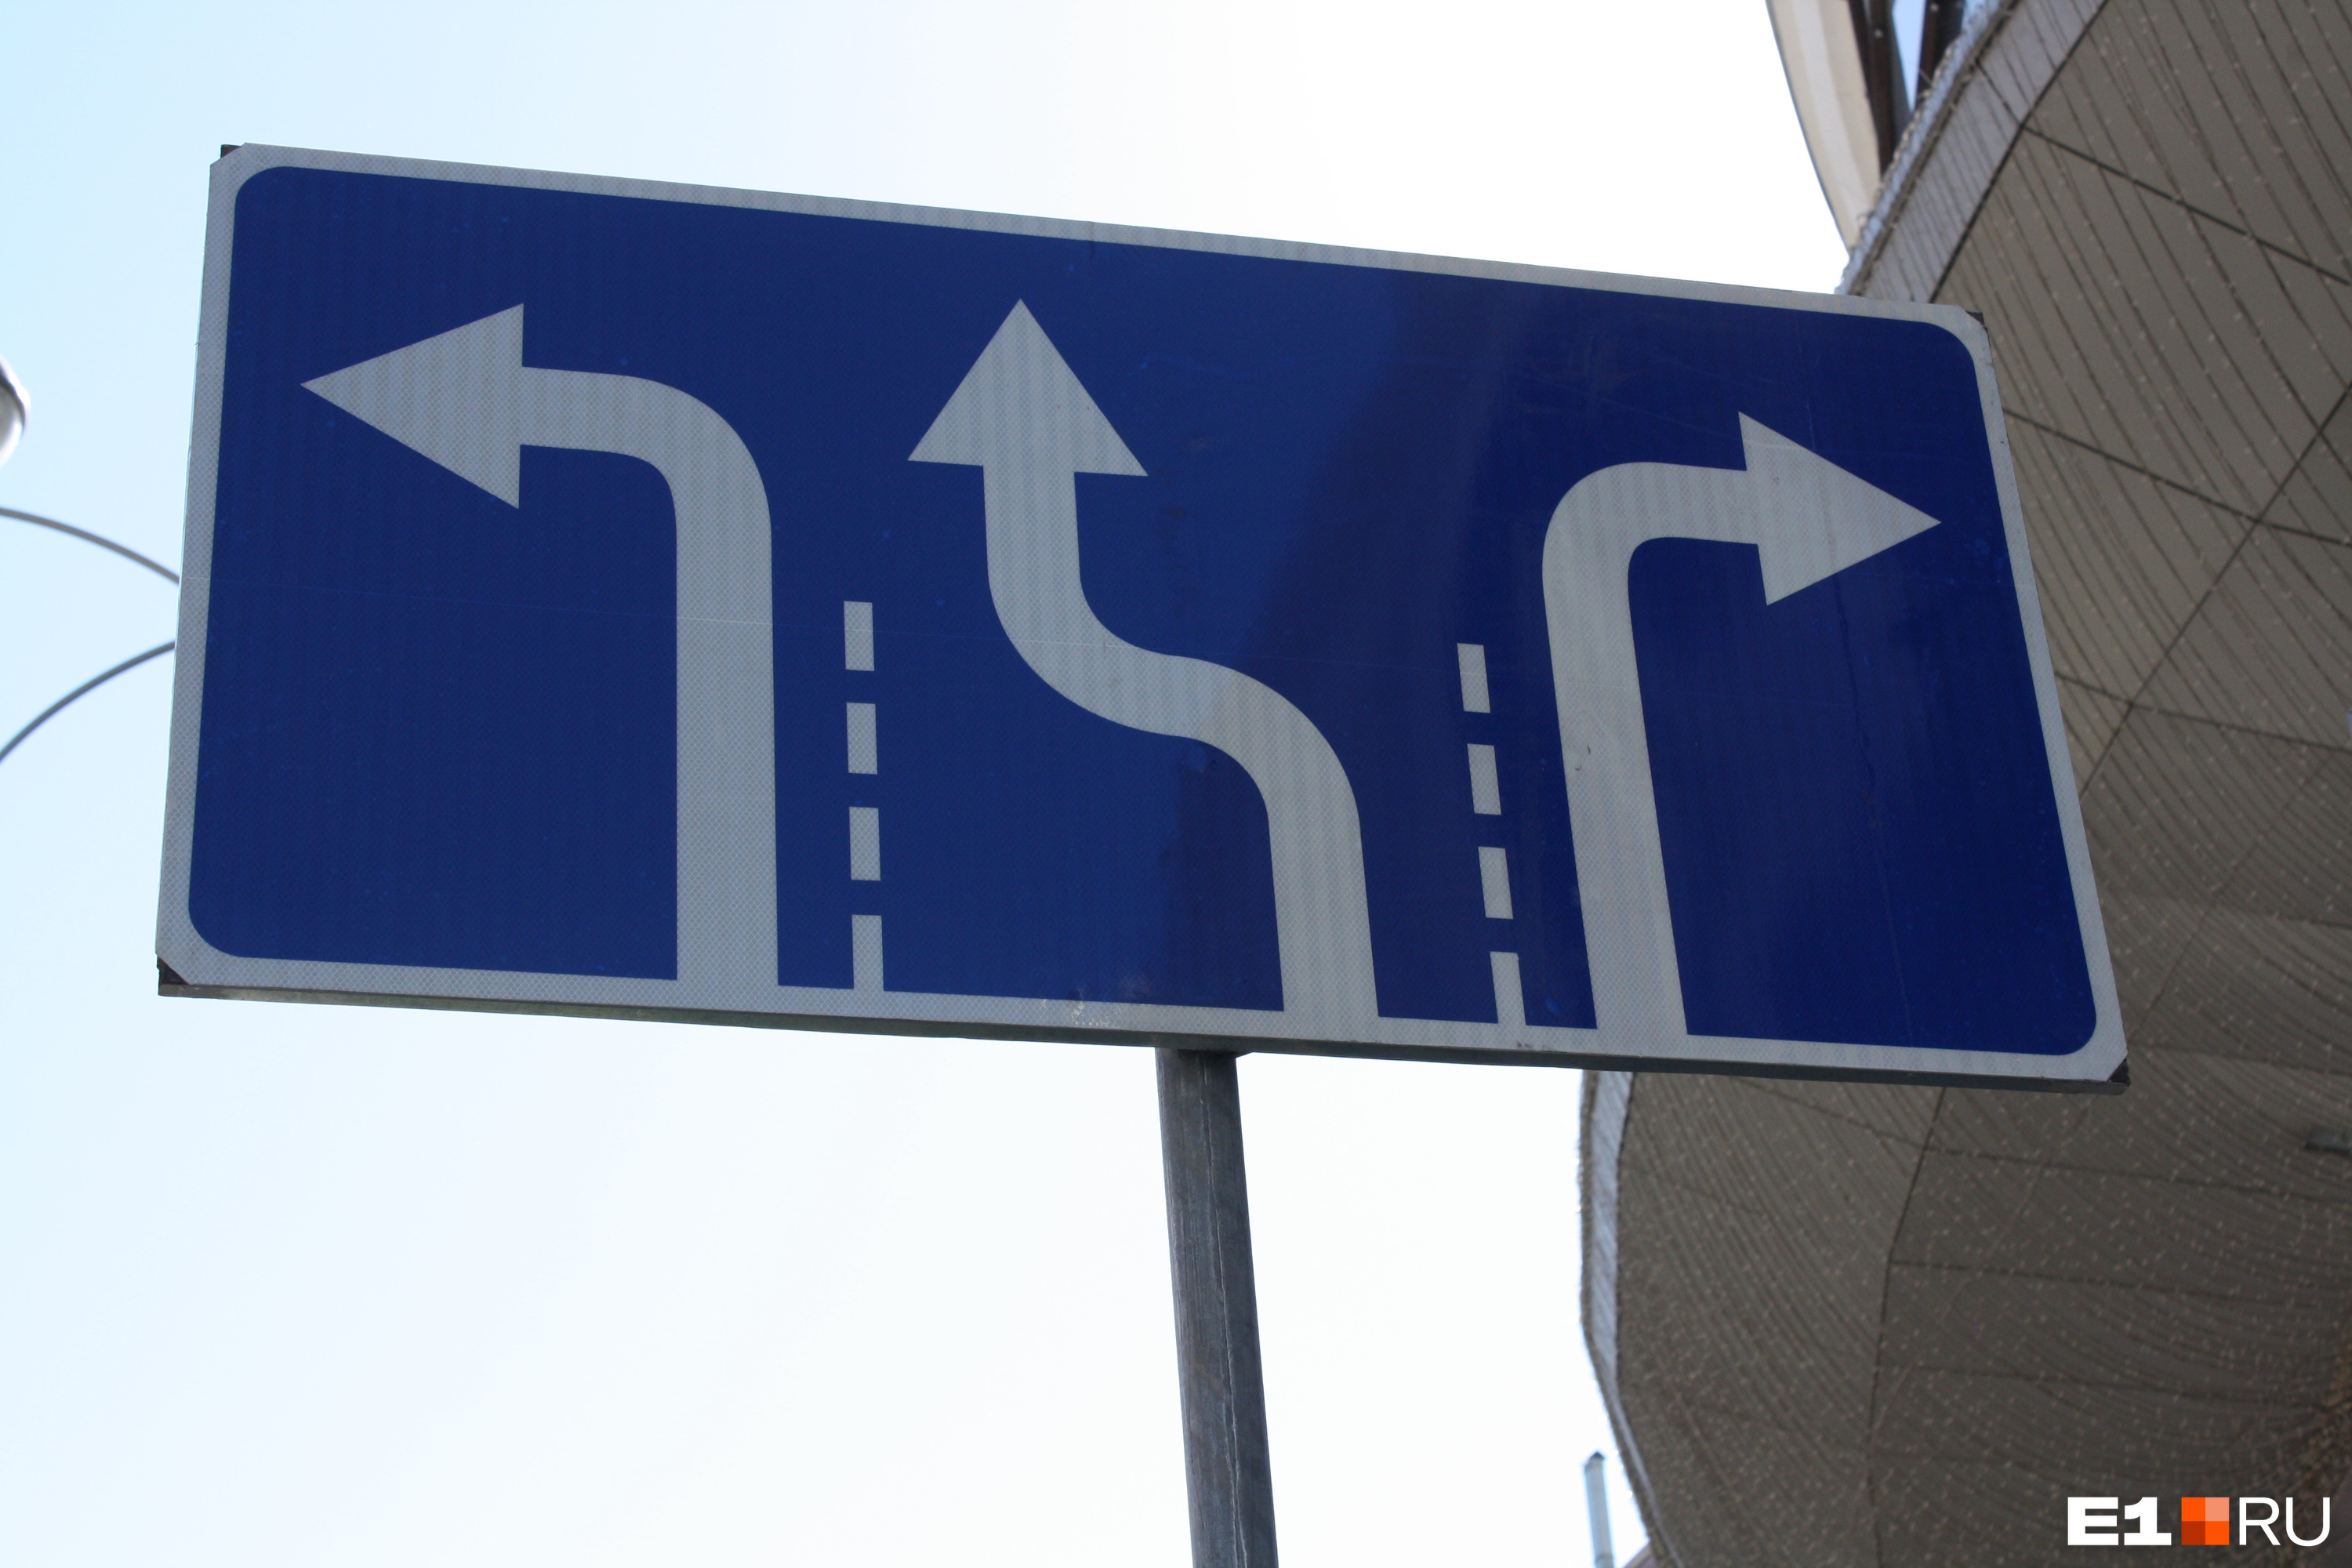 Новый знак 5.15.1 «Направления движения по полосам» установлен за несколько сотен метров от перекрестка, чтобы водители успели сориентироваться, в какую полосу им встать